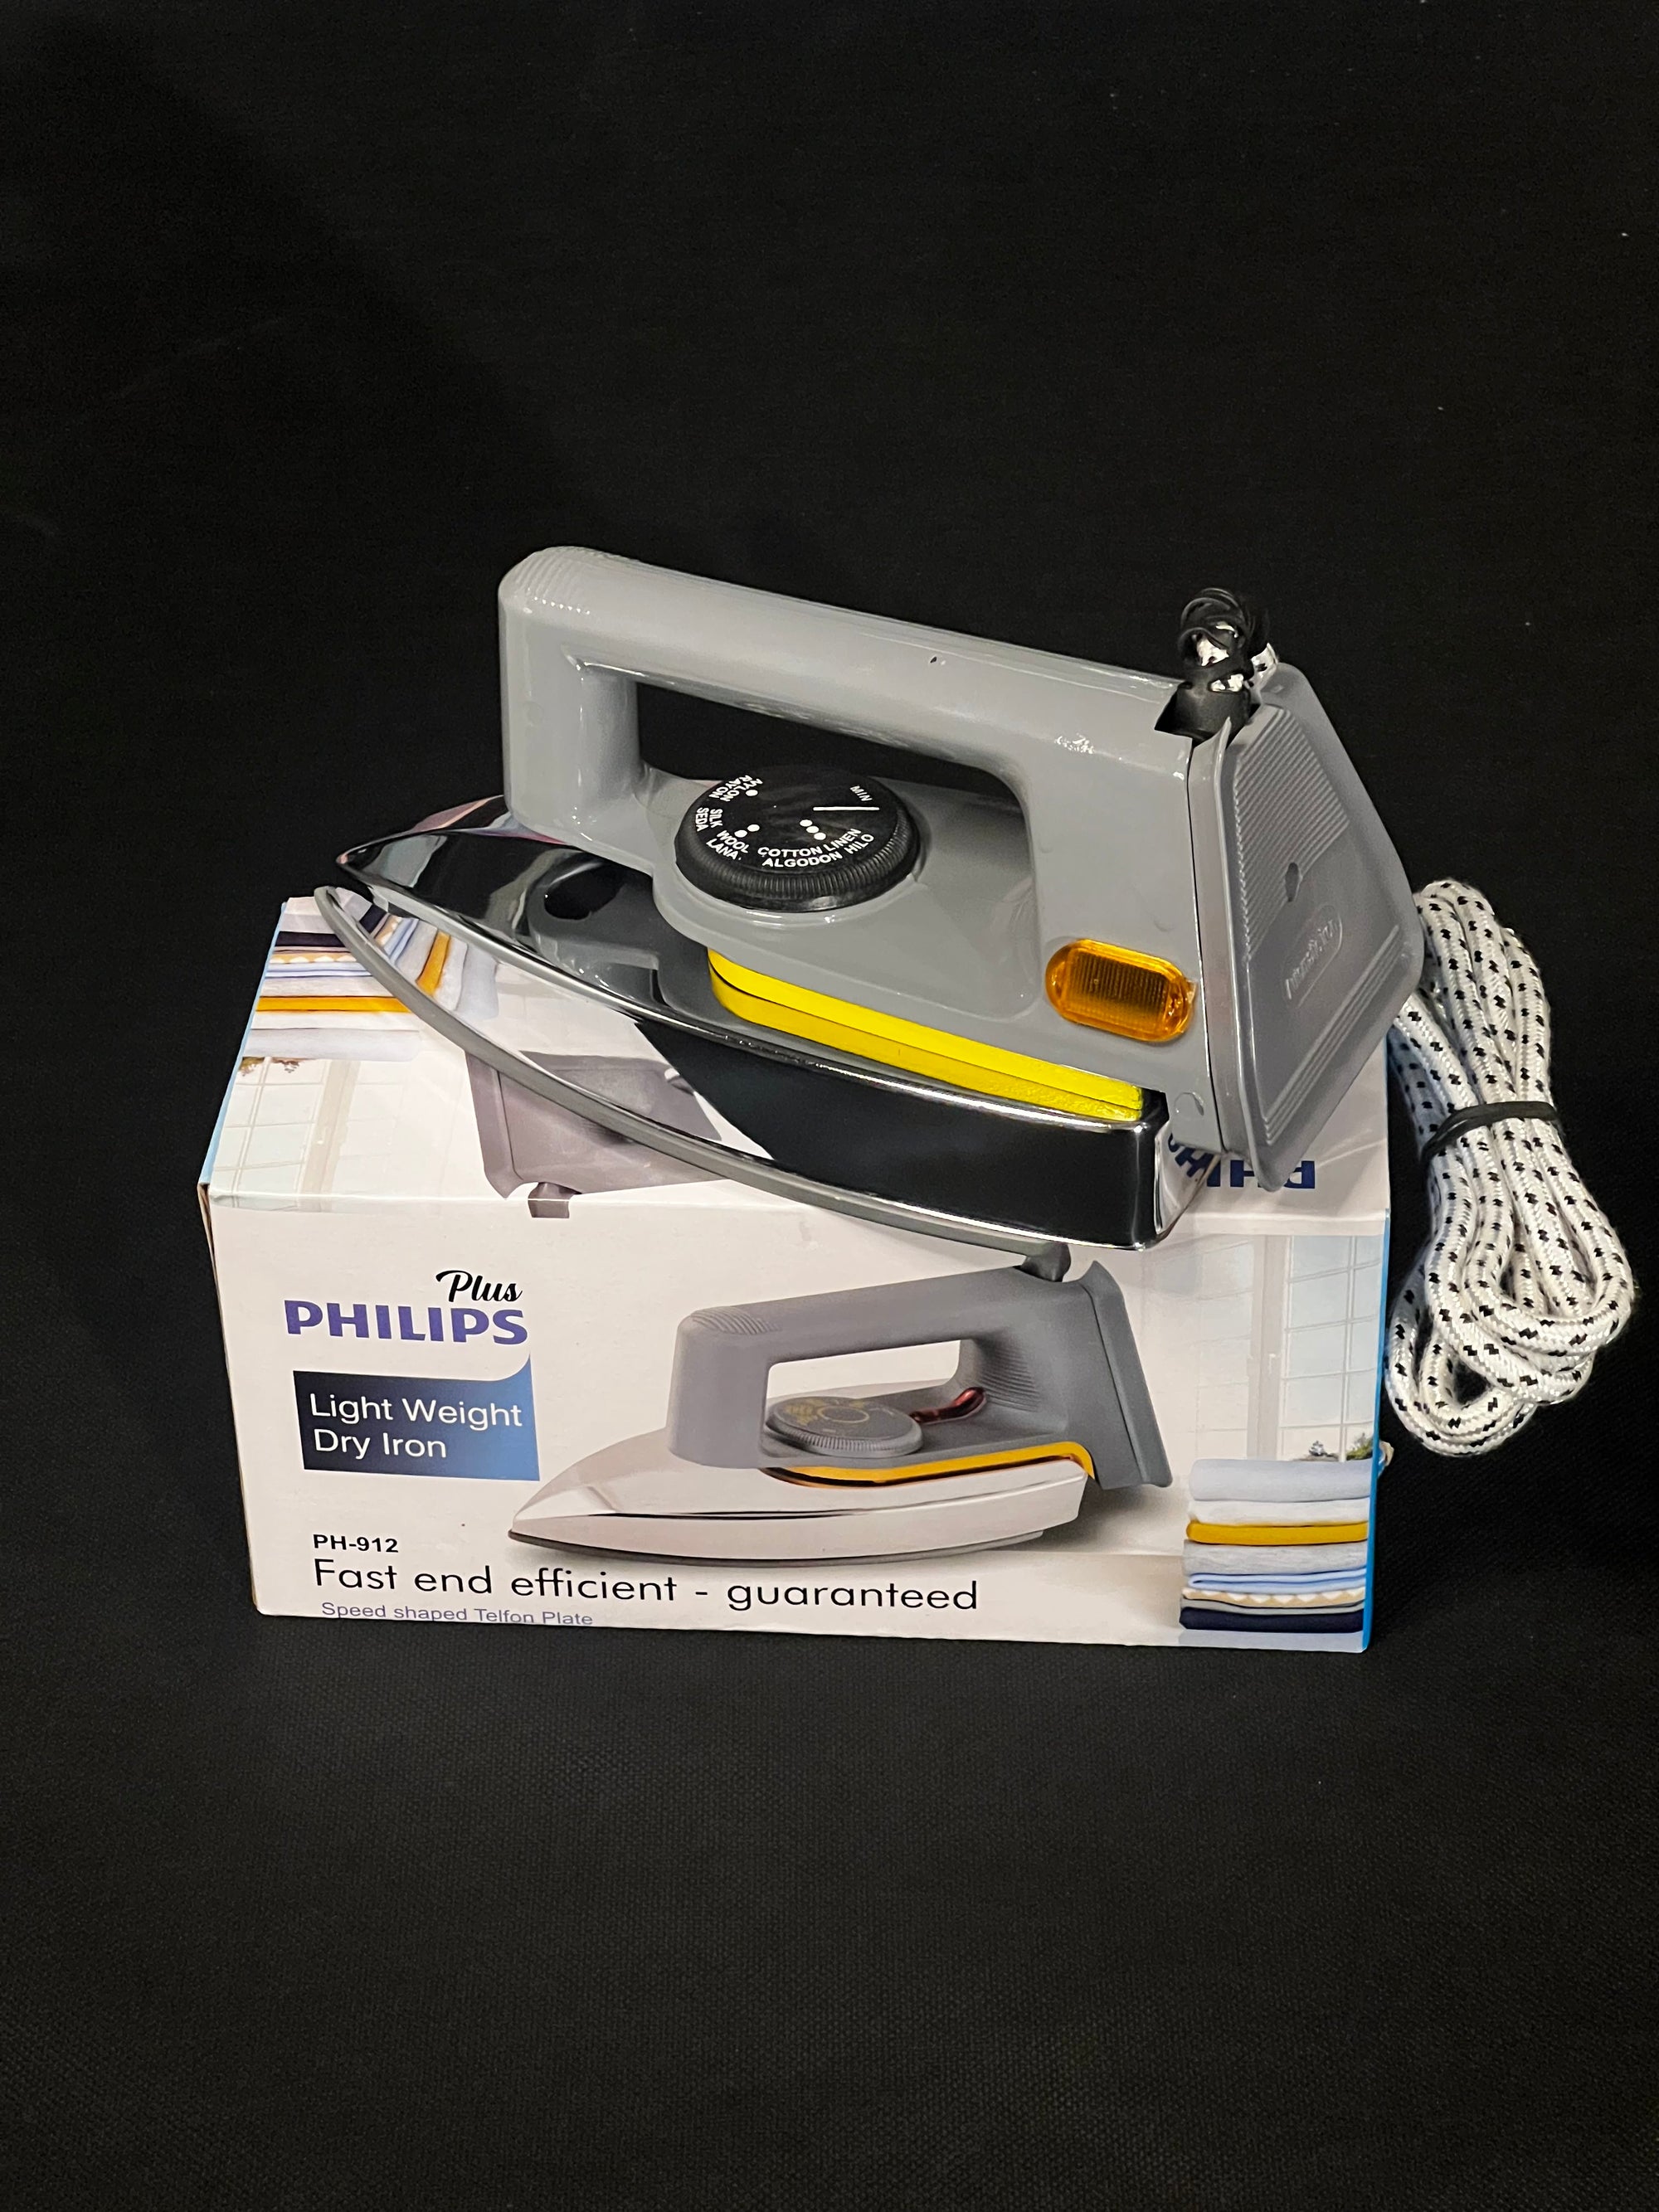 Philips Plus Dry Iron